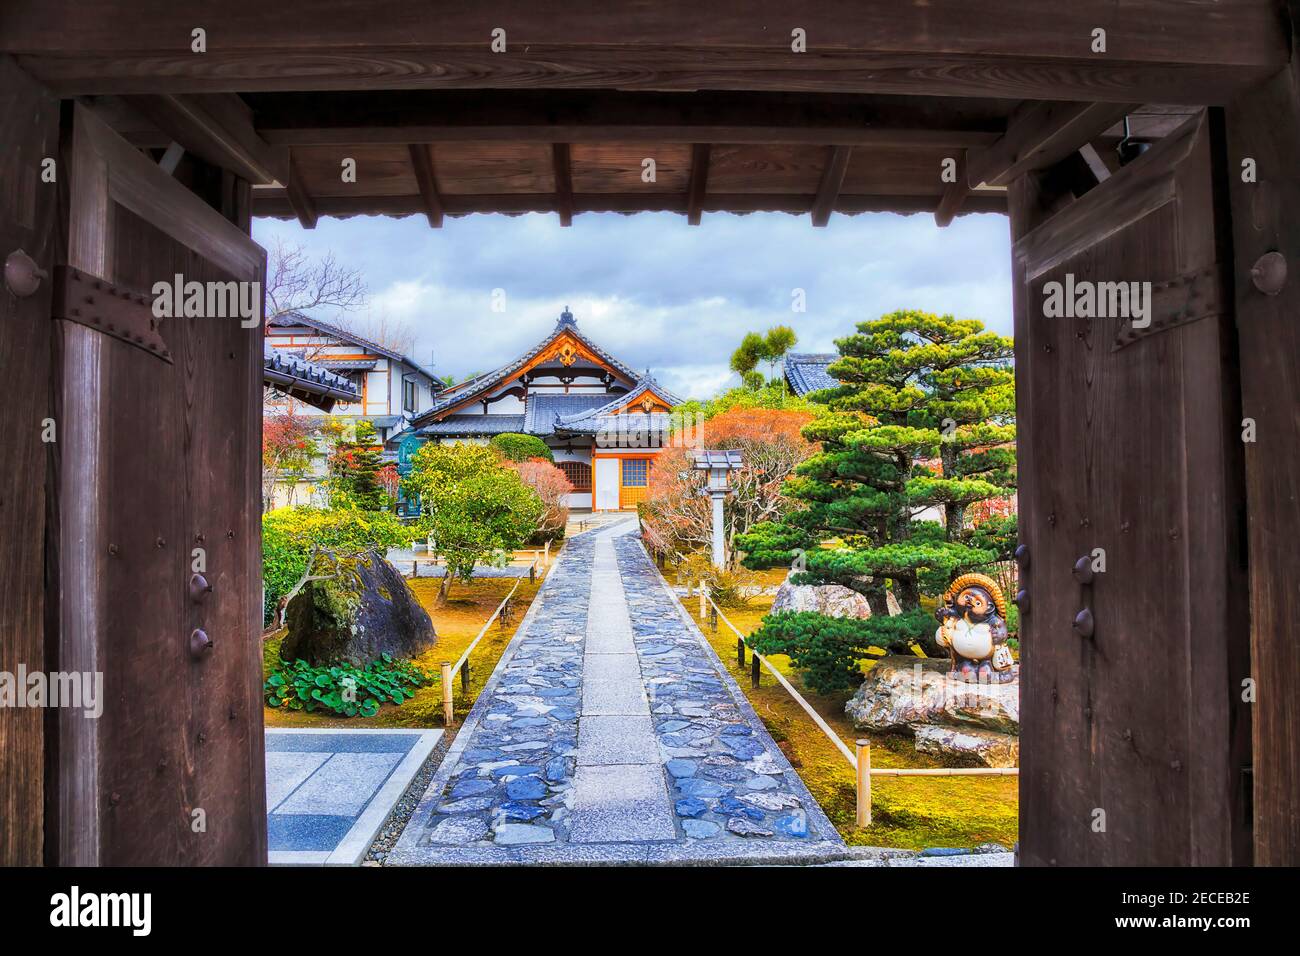 Cadre de portes ouvertes accueillantes à l'entrée du jardin japonais traditionnel avec temple historique et parc dans la ville de Kyoto au Japon. Banque D'Images